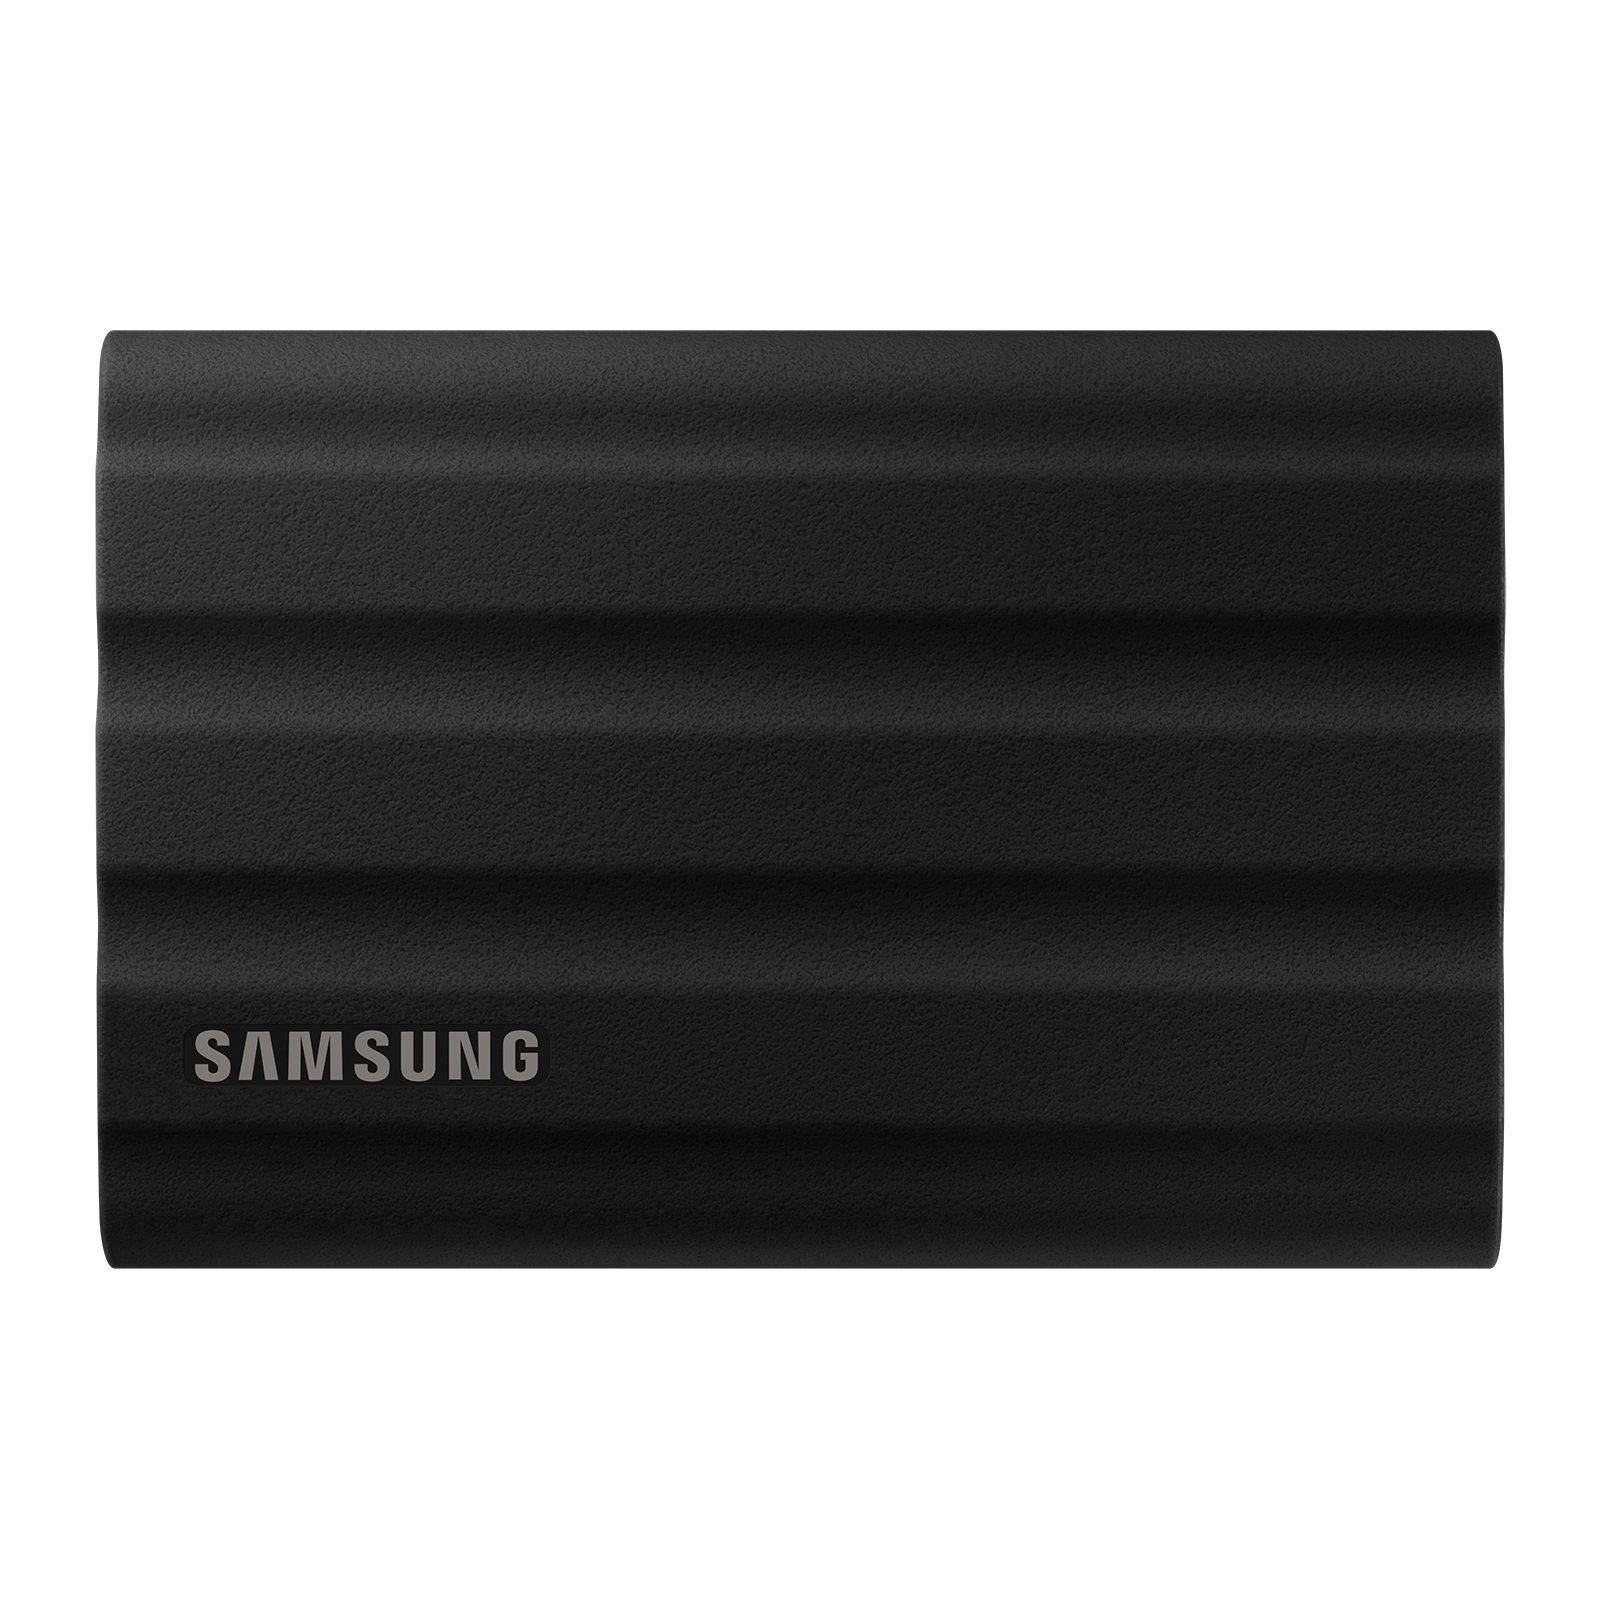 Samsung Portable SSD T7 Shield（4TB）ブラック | ITGマーケティング